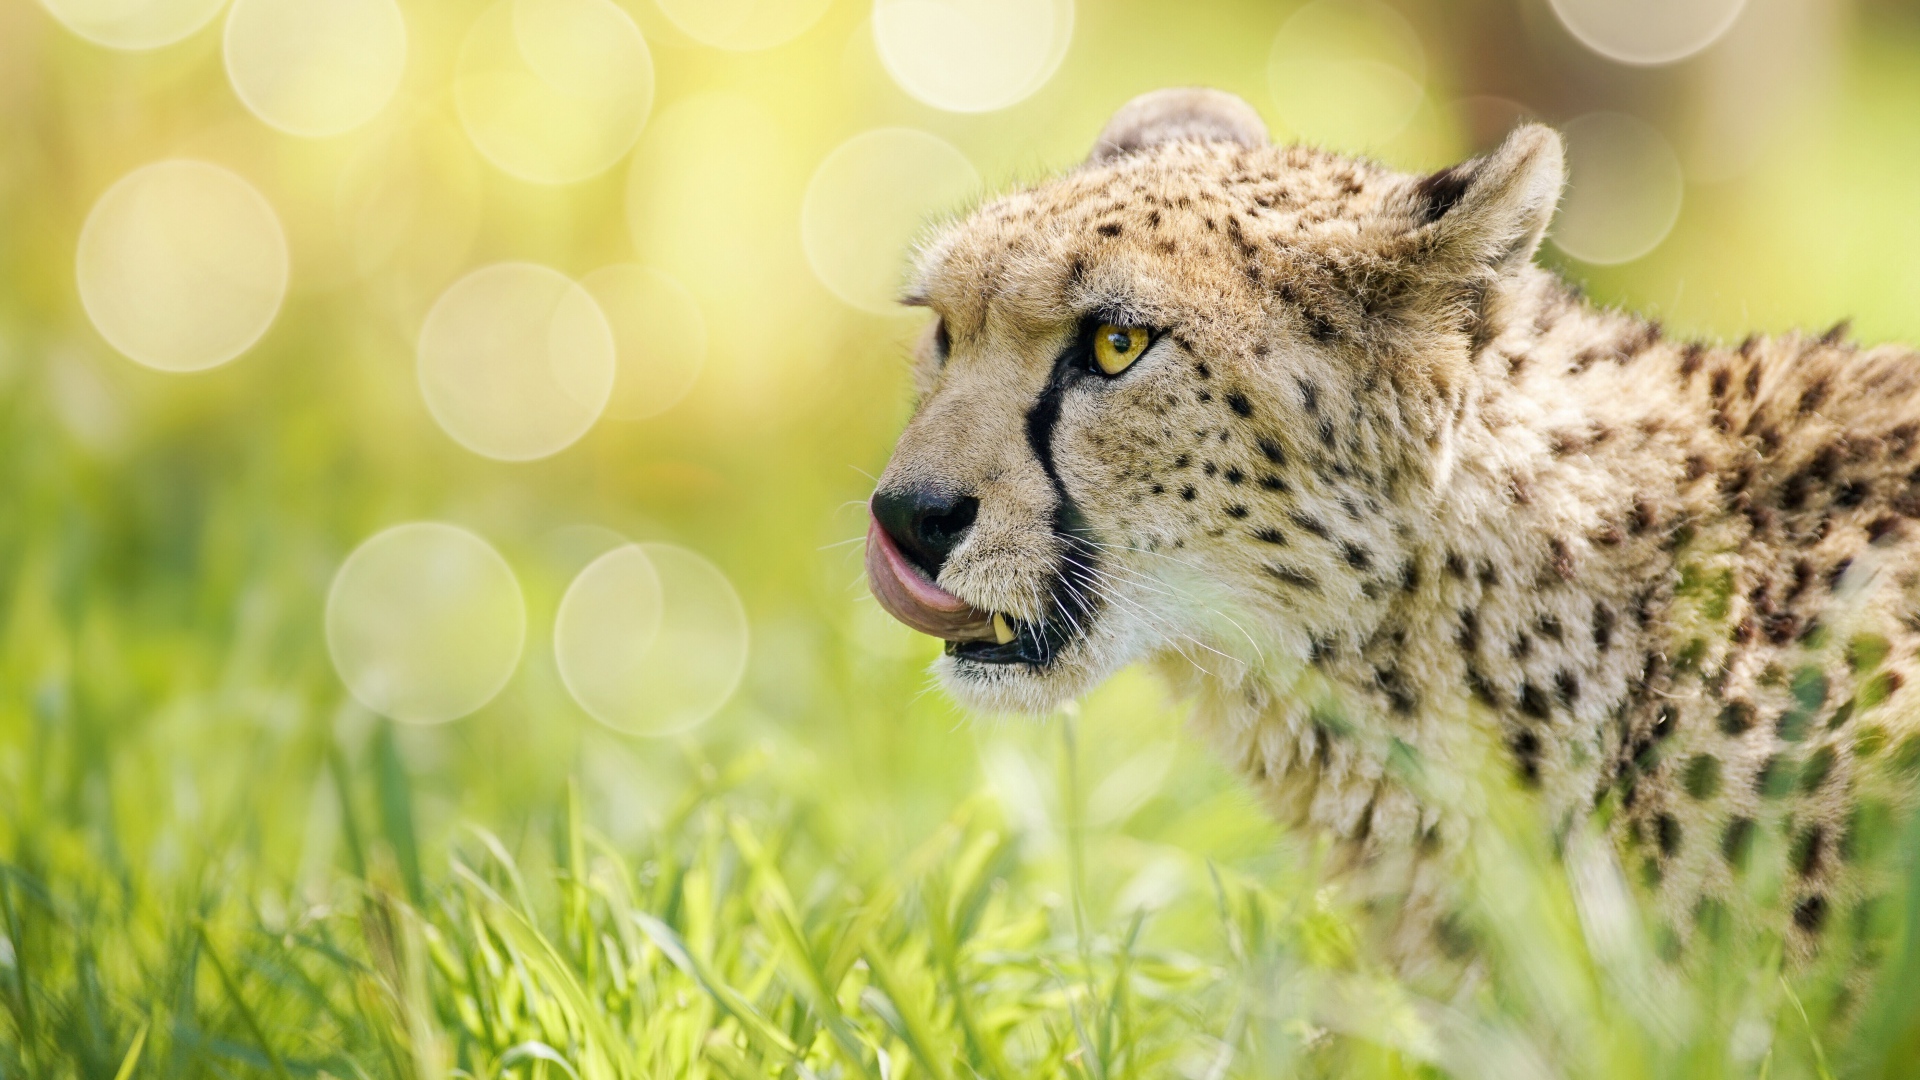 Гепард с высунутым языком в траве